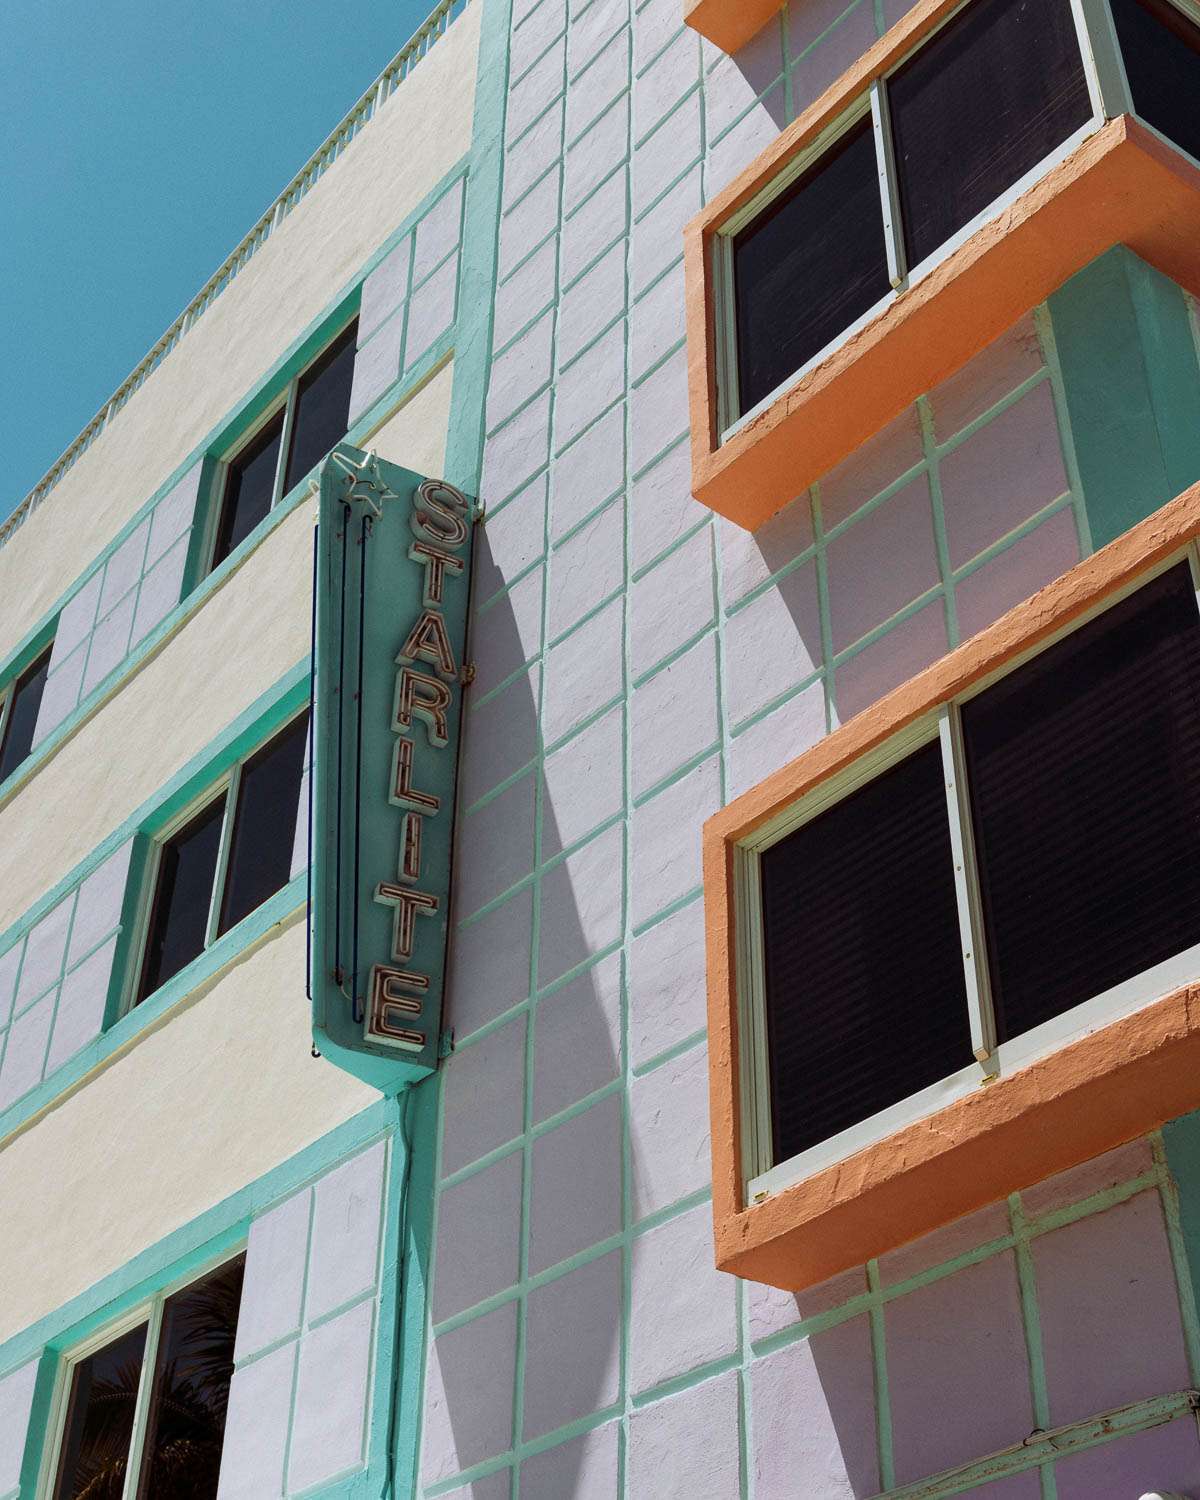 Rachel Off Duty: Art Deco Architecture in Miami